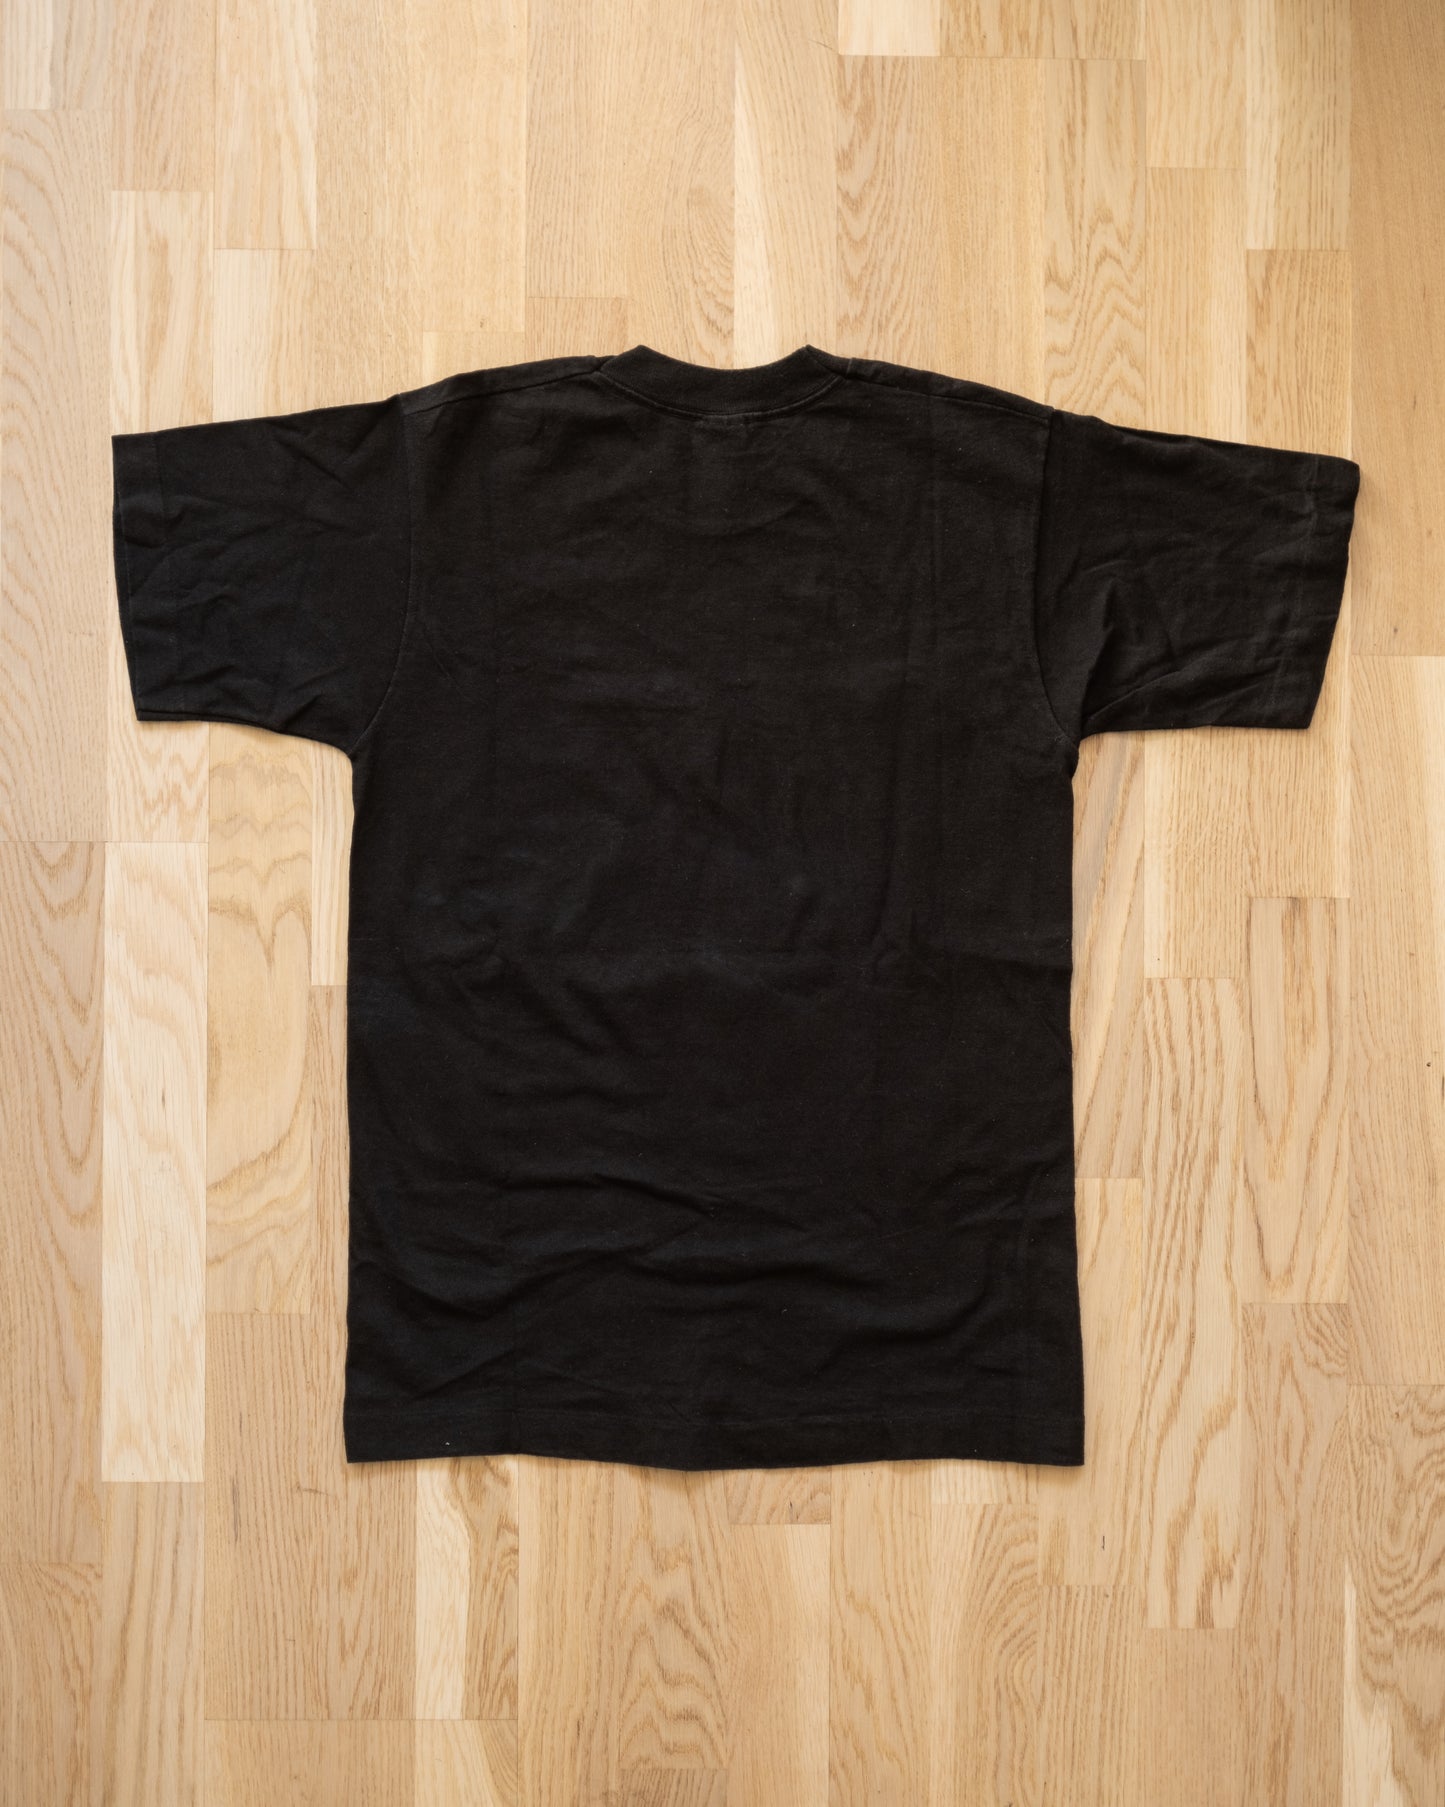 Legendary Lands Sedona AZ 1992 Vintage T-Shirt Size S